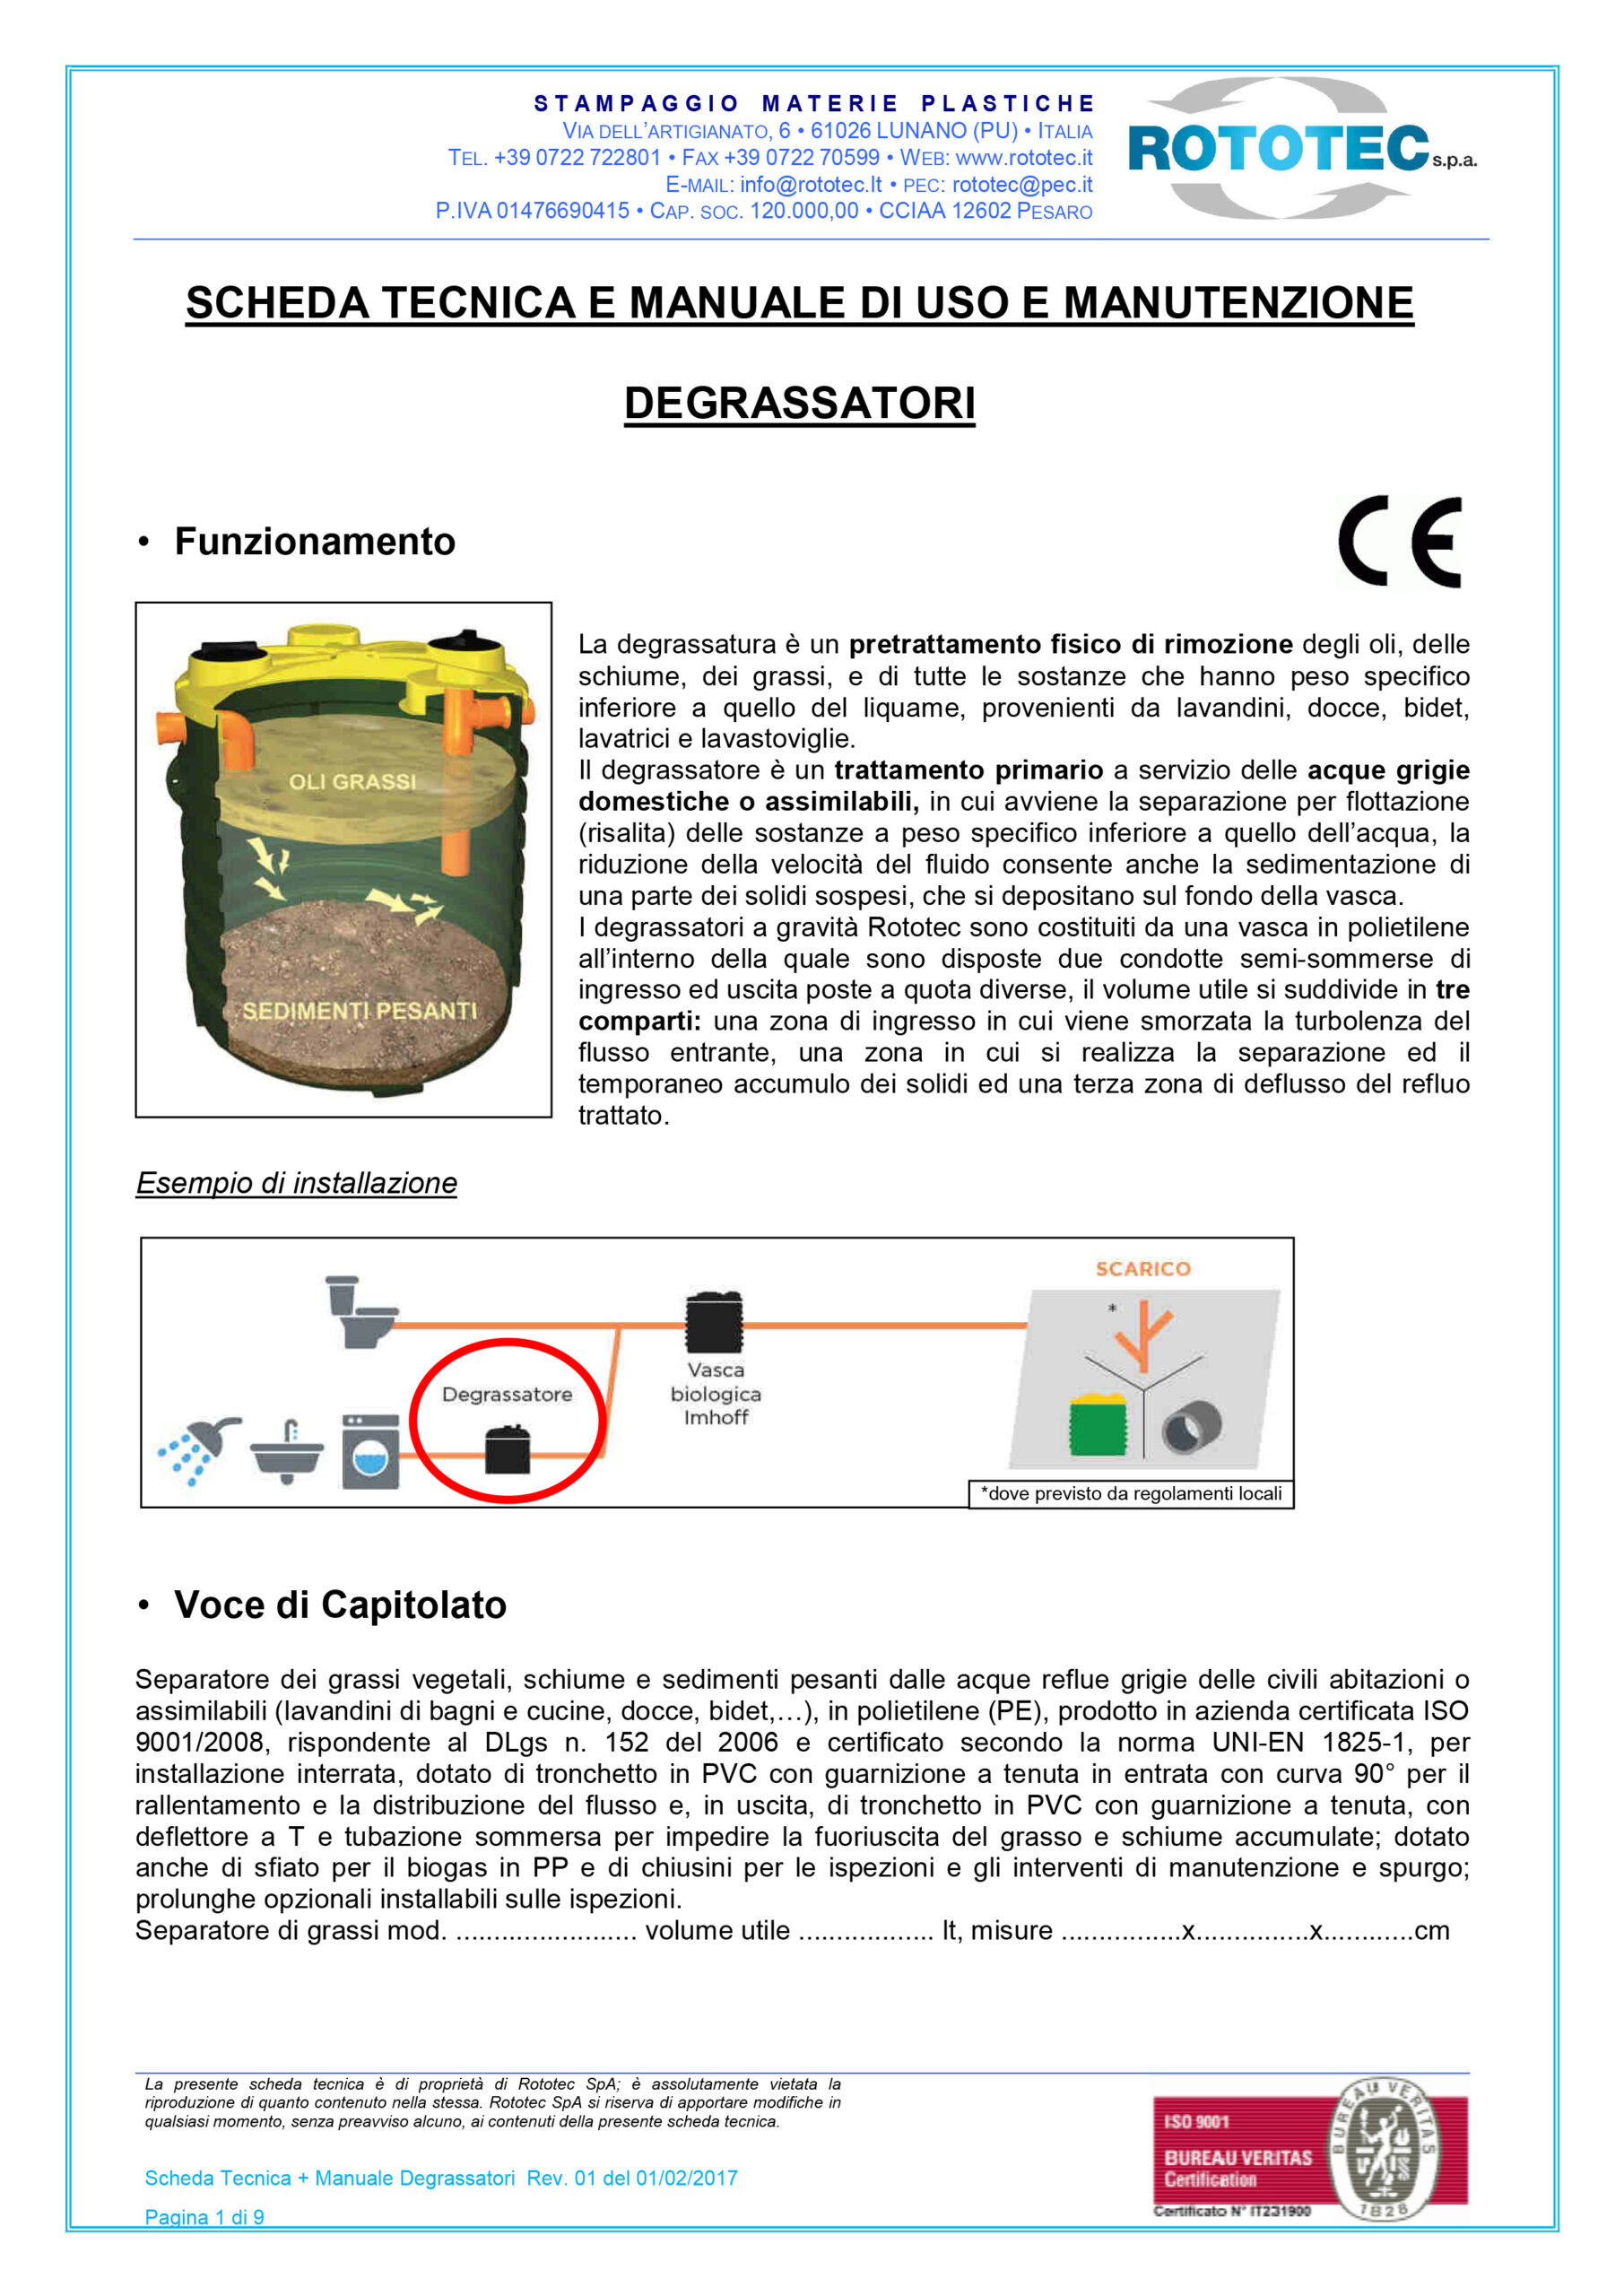 Scheda tecnica-Manuale Degrassatori - 1804201795544_Schedatecnic